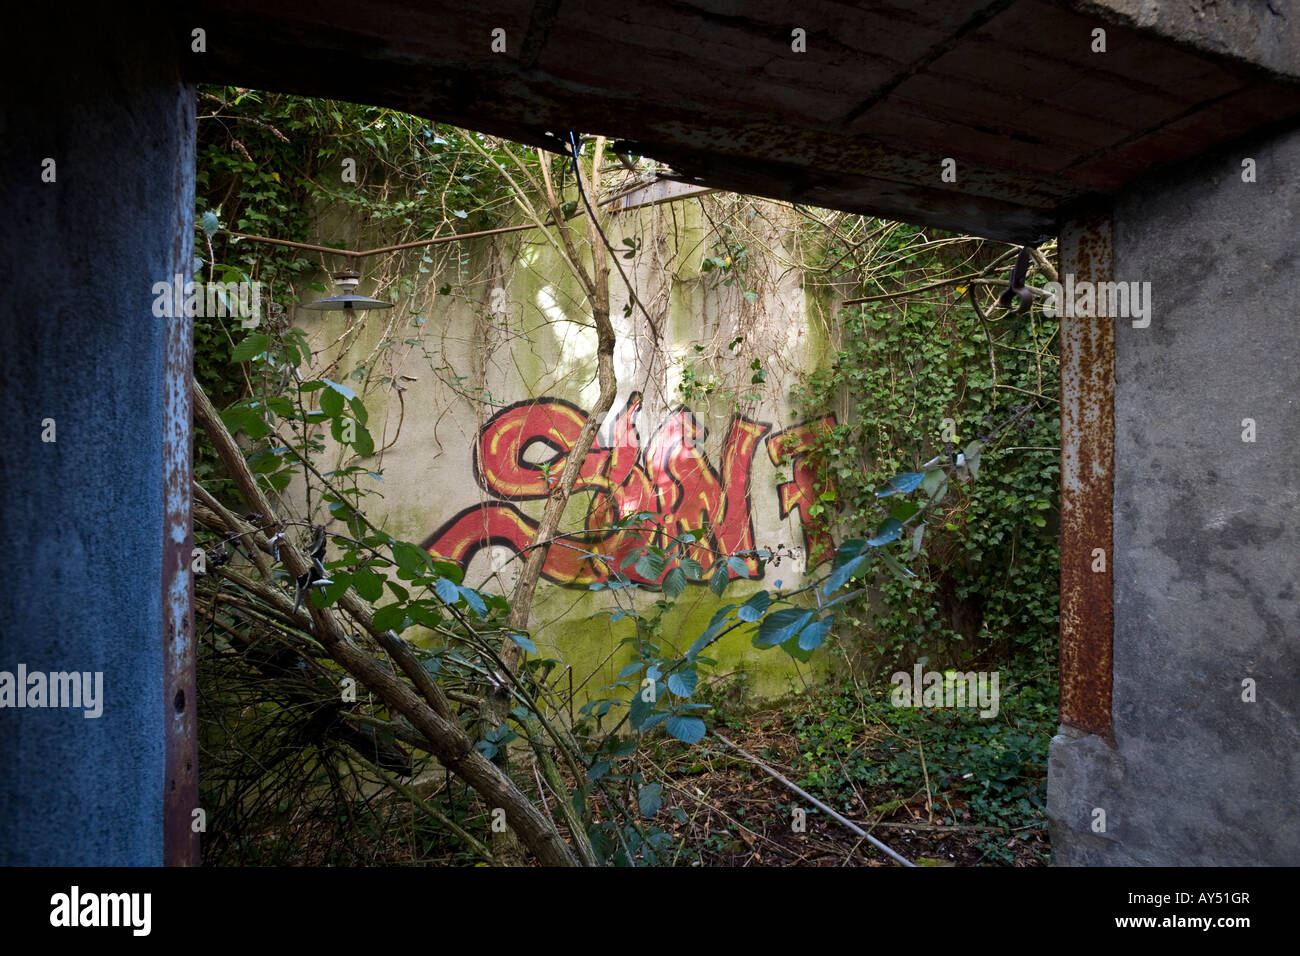 Graffiti covered with vegetation in a brownfield site factory. Graffiti recouverts de végétation dans une usine désaffectée. Stock Photo